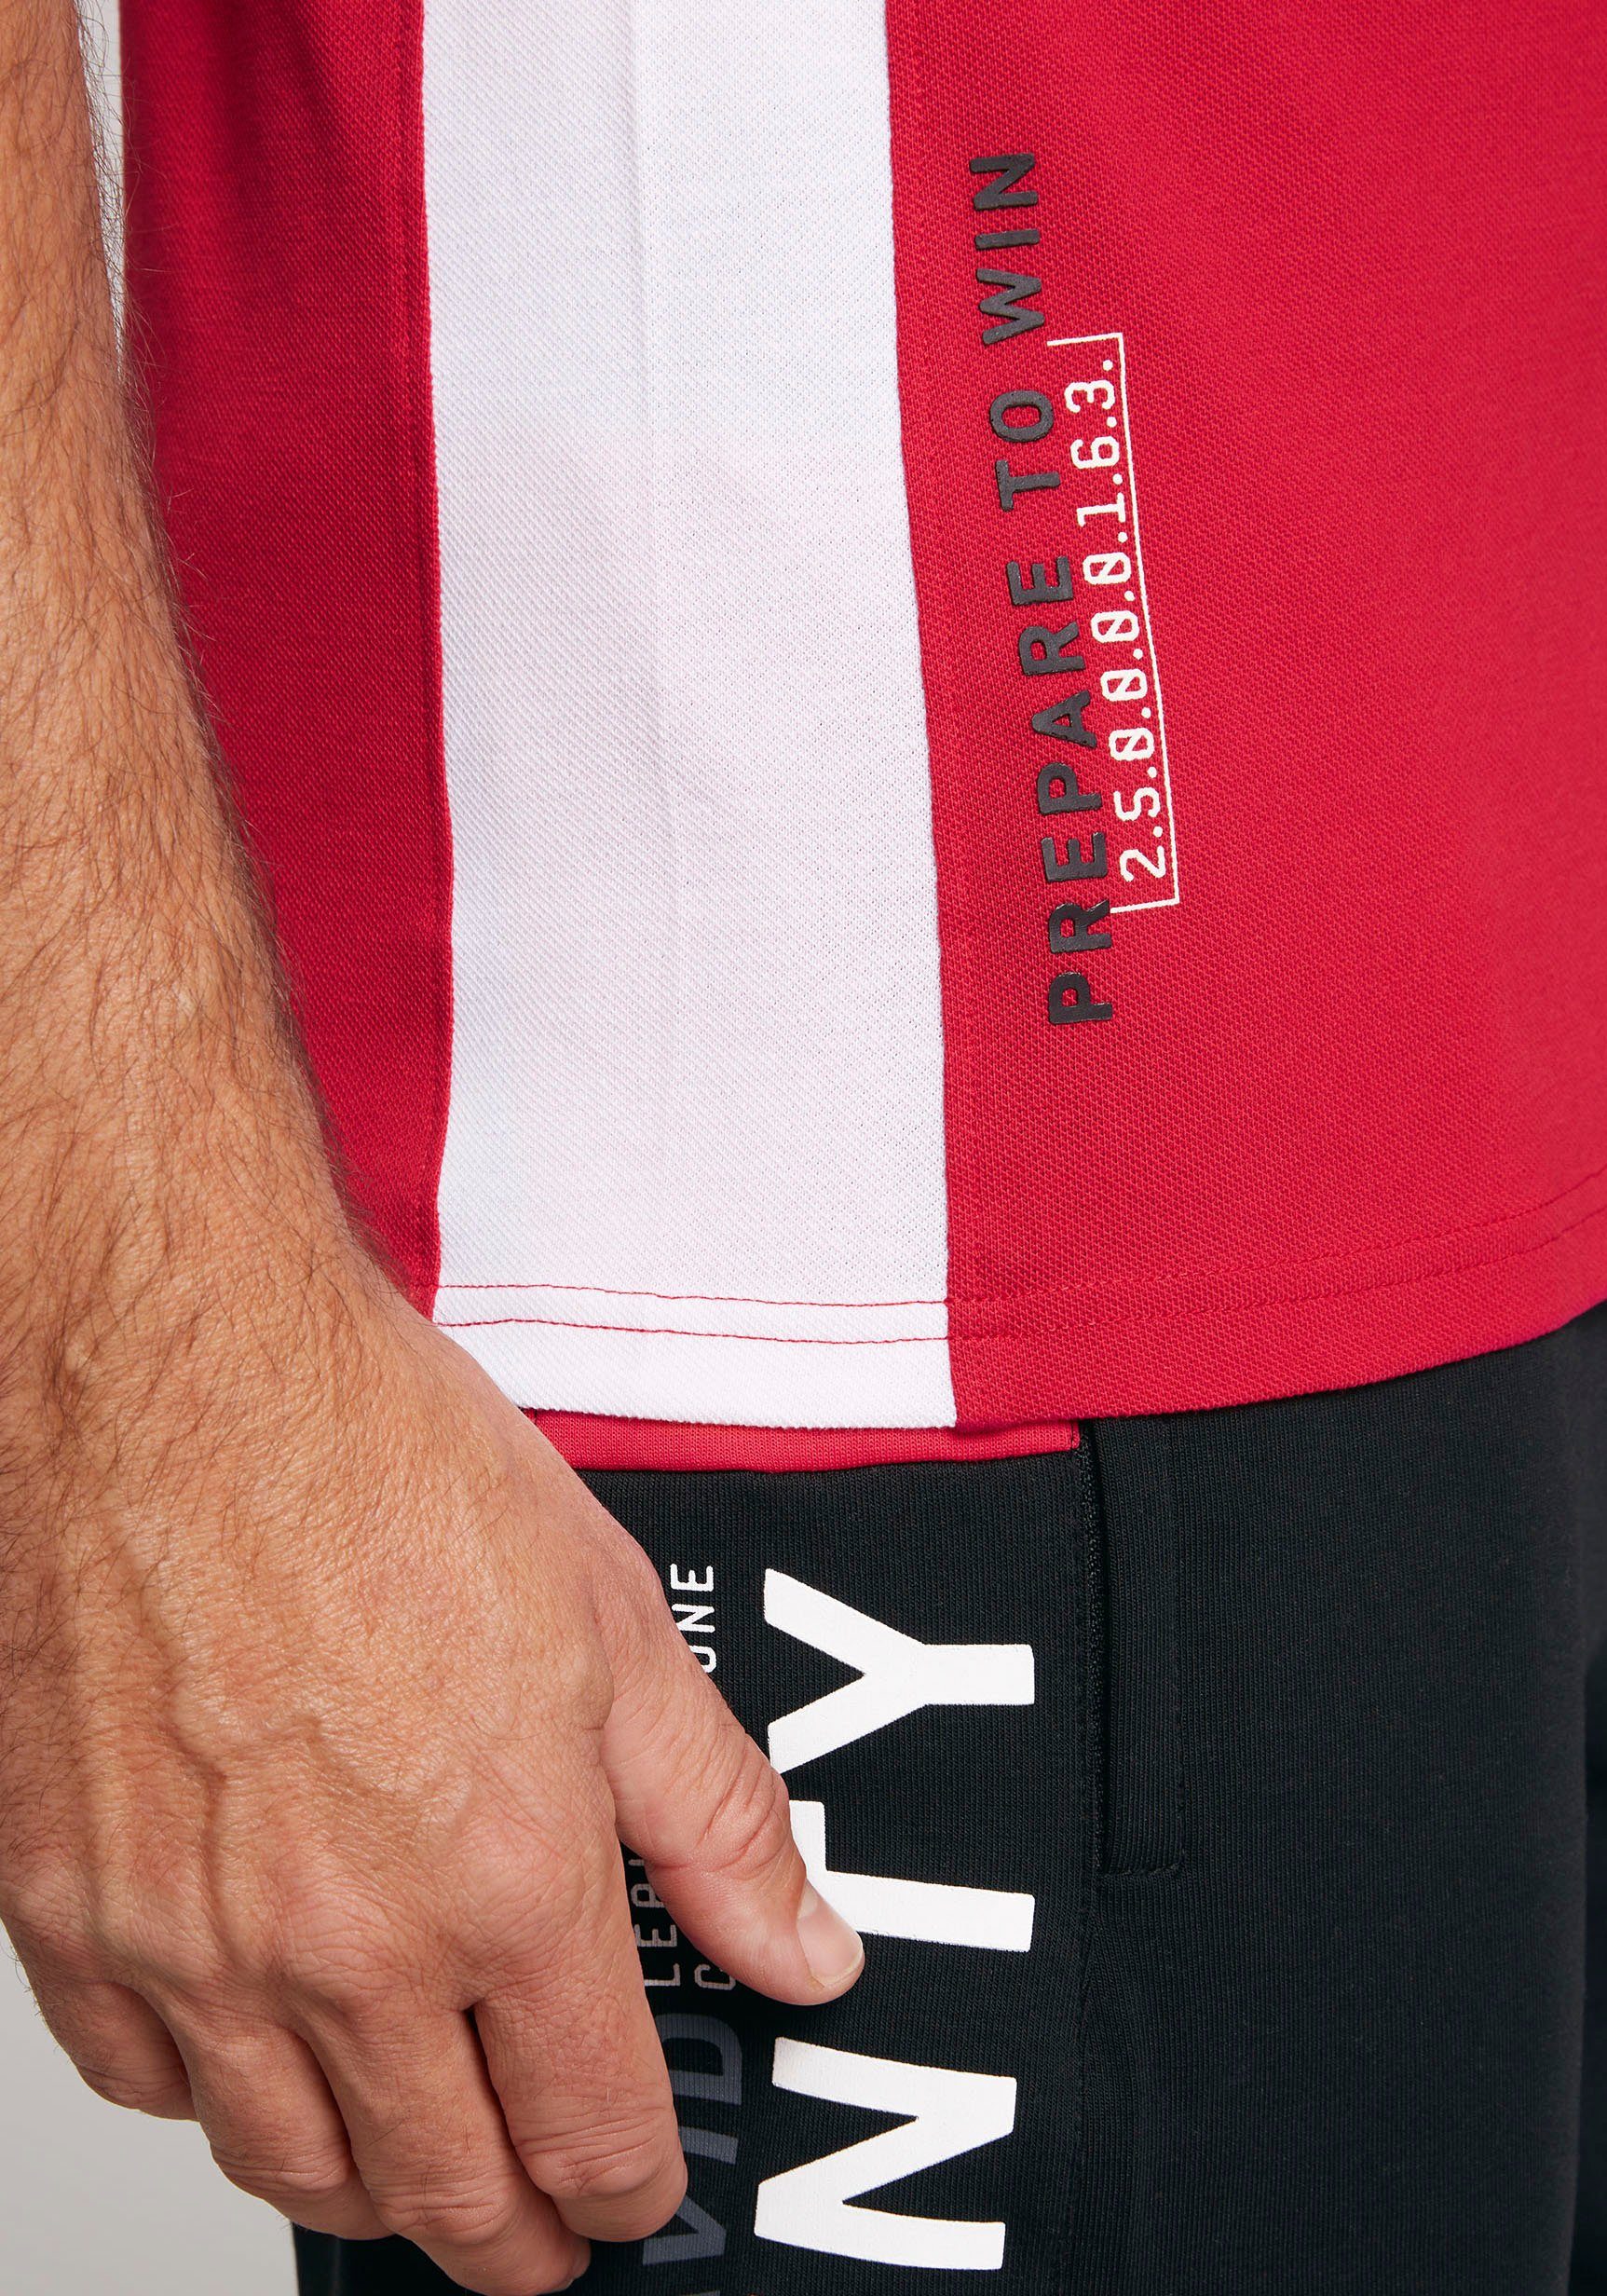 CAMP DAVID Poloshirt Prints mit und Rubber red Rückseite Ärmeln, auf Vorder- power